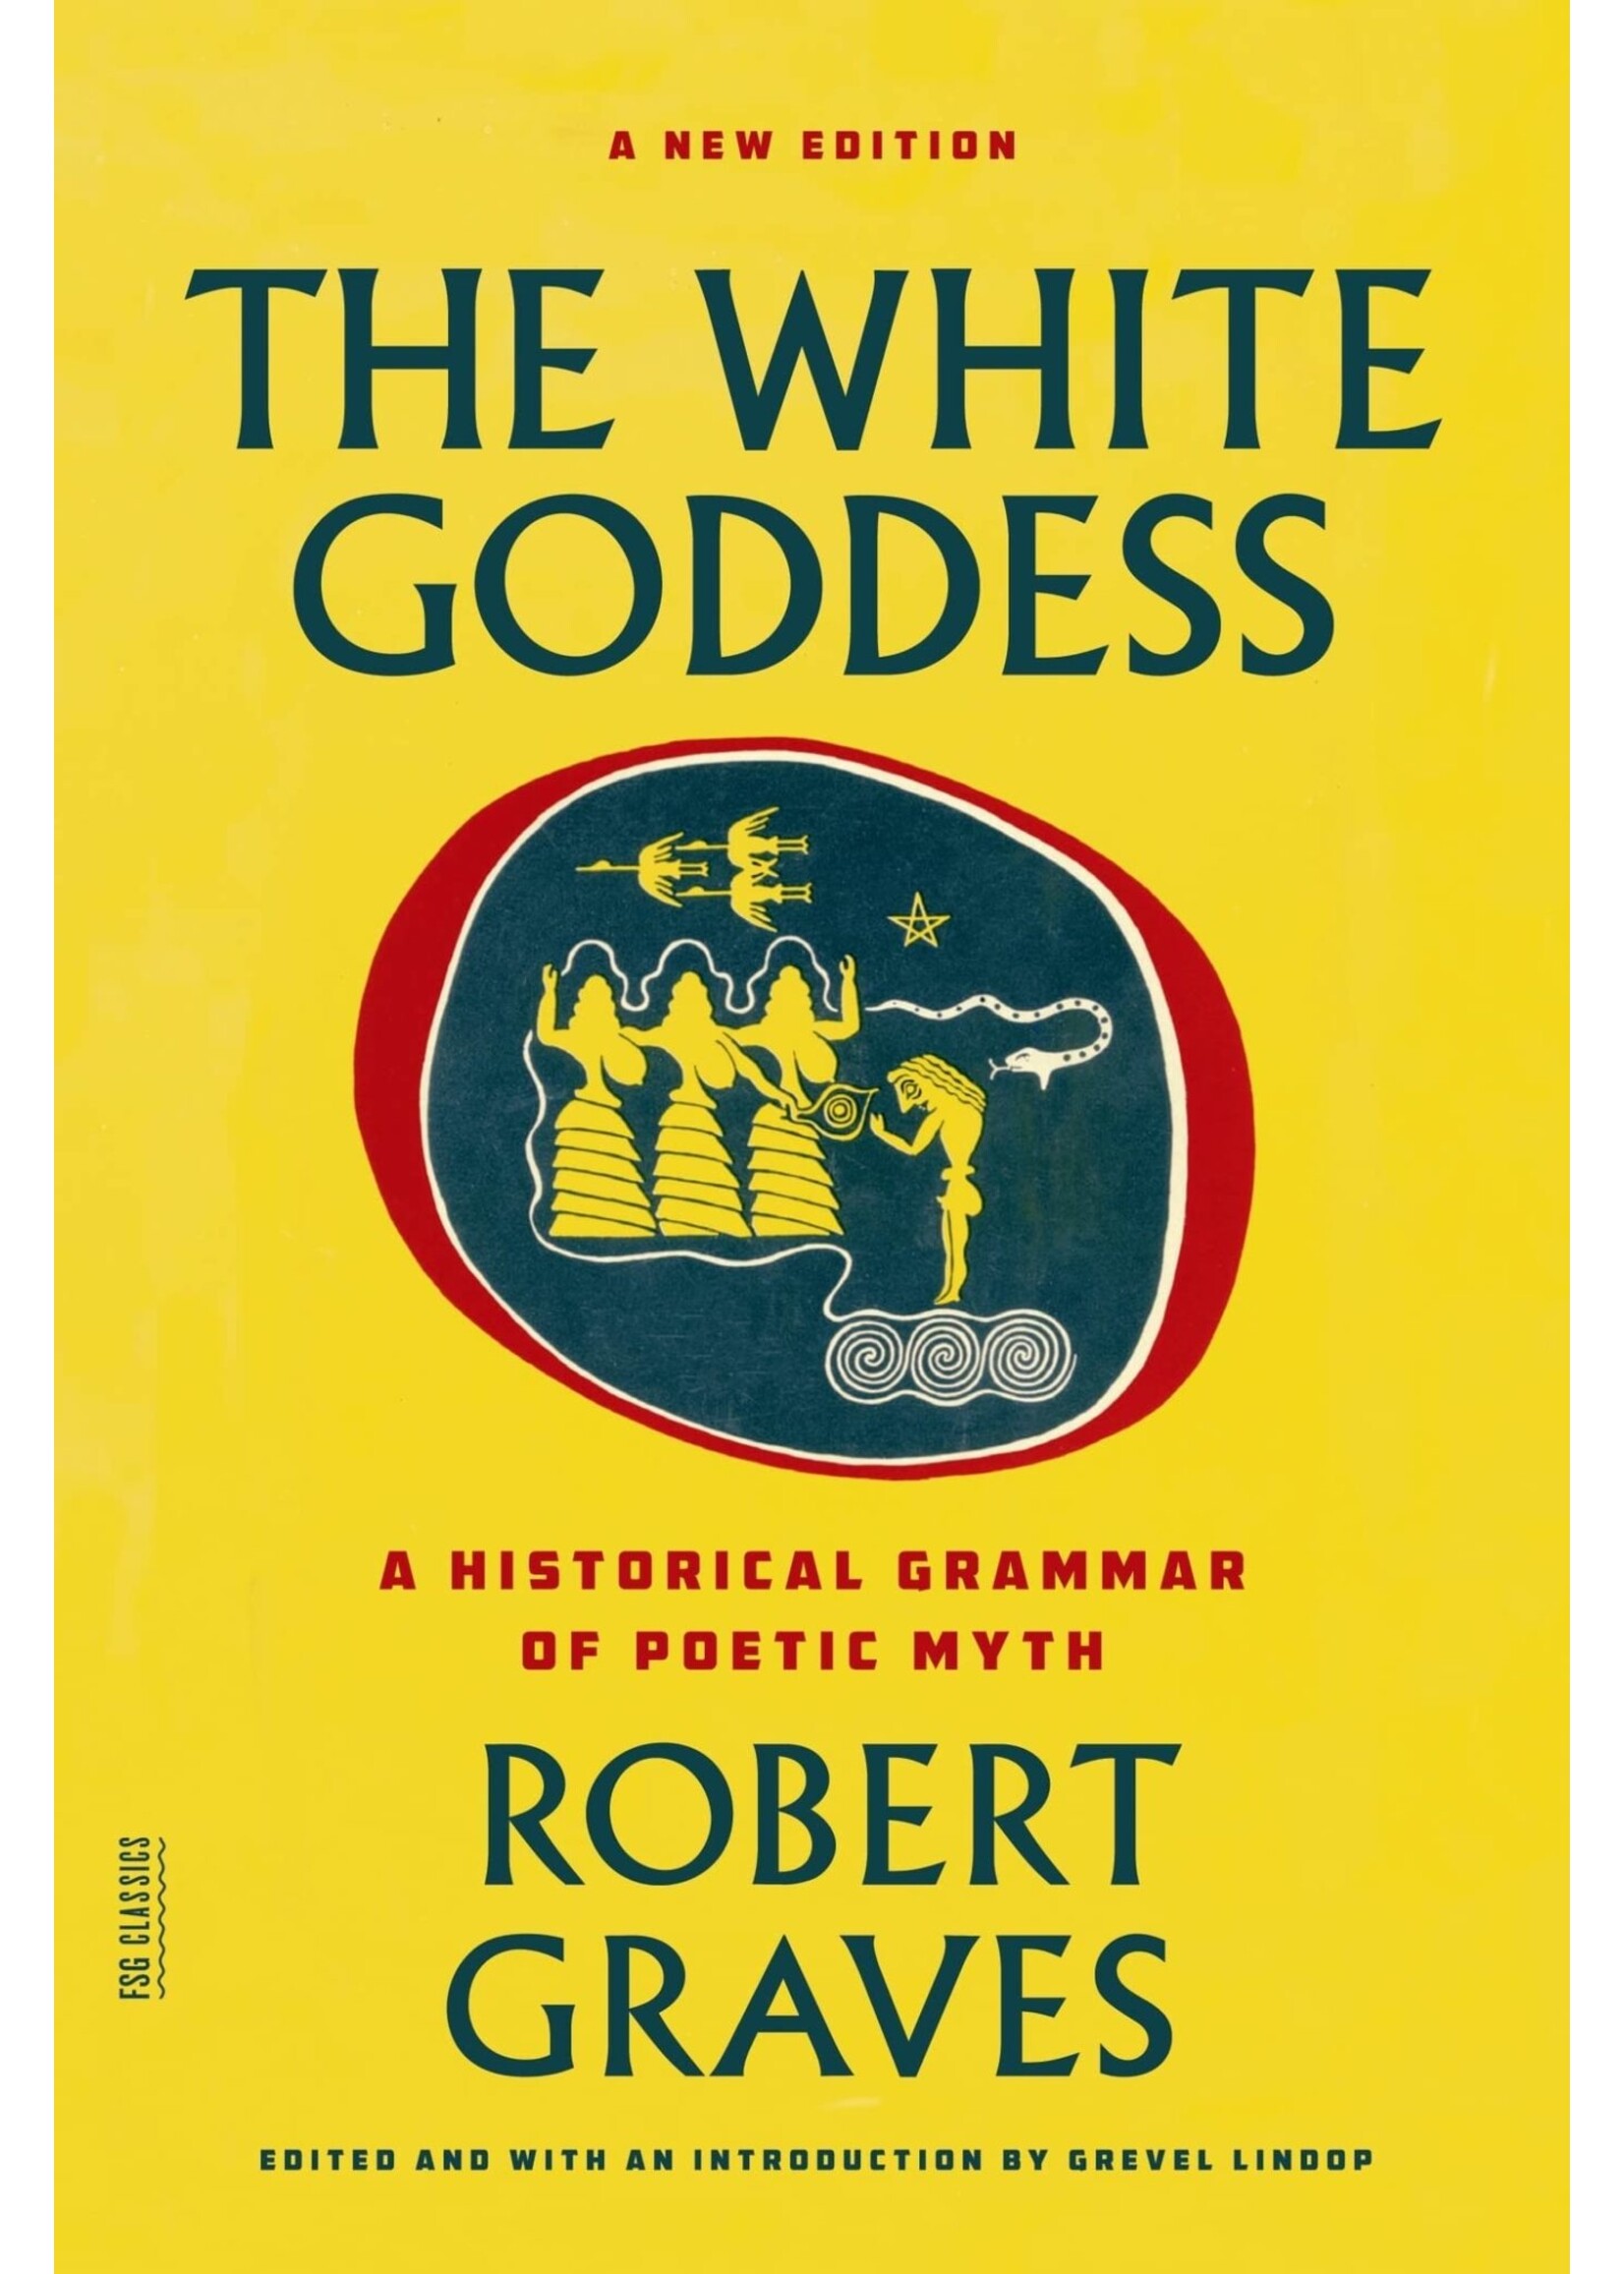 The White Goddess By Robert Graves